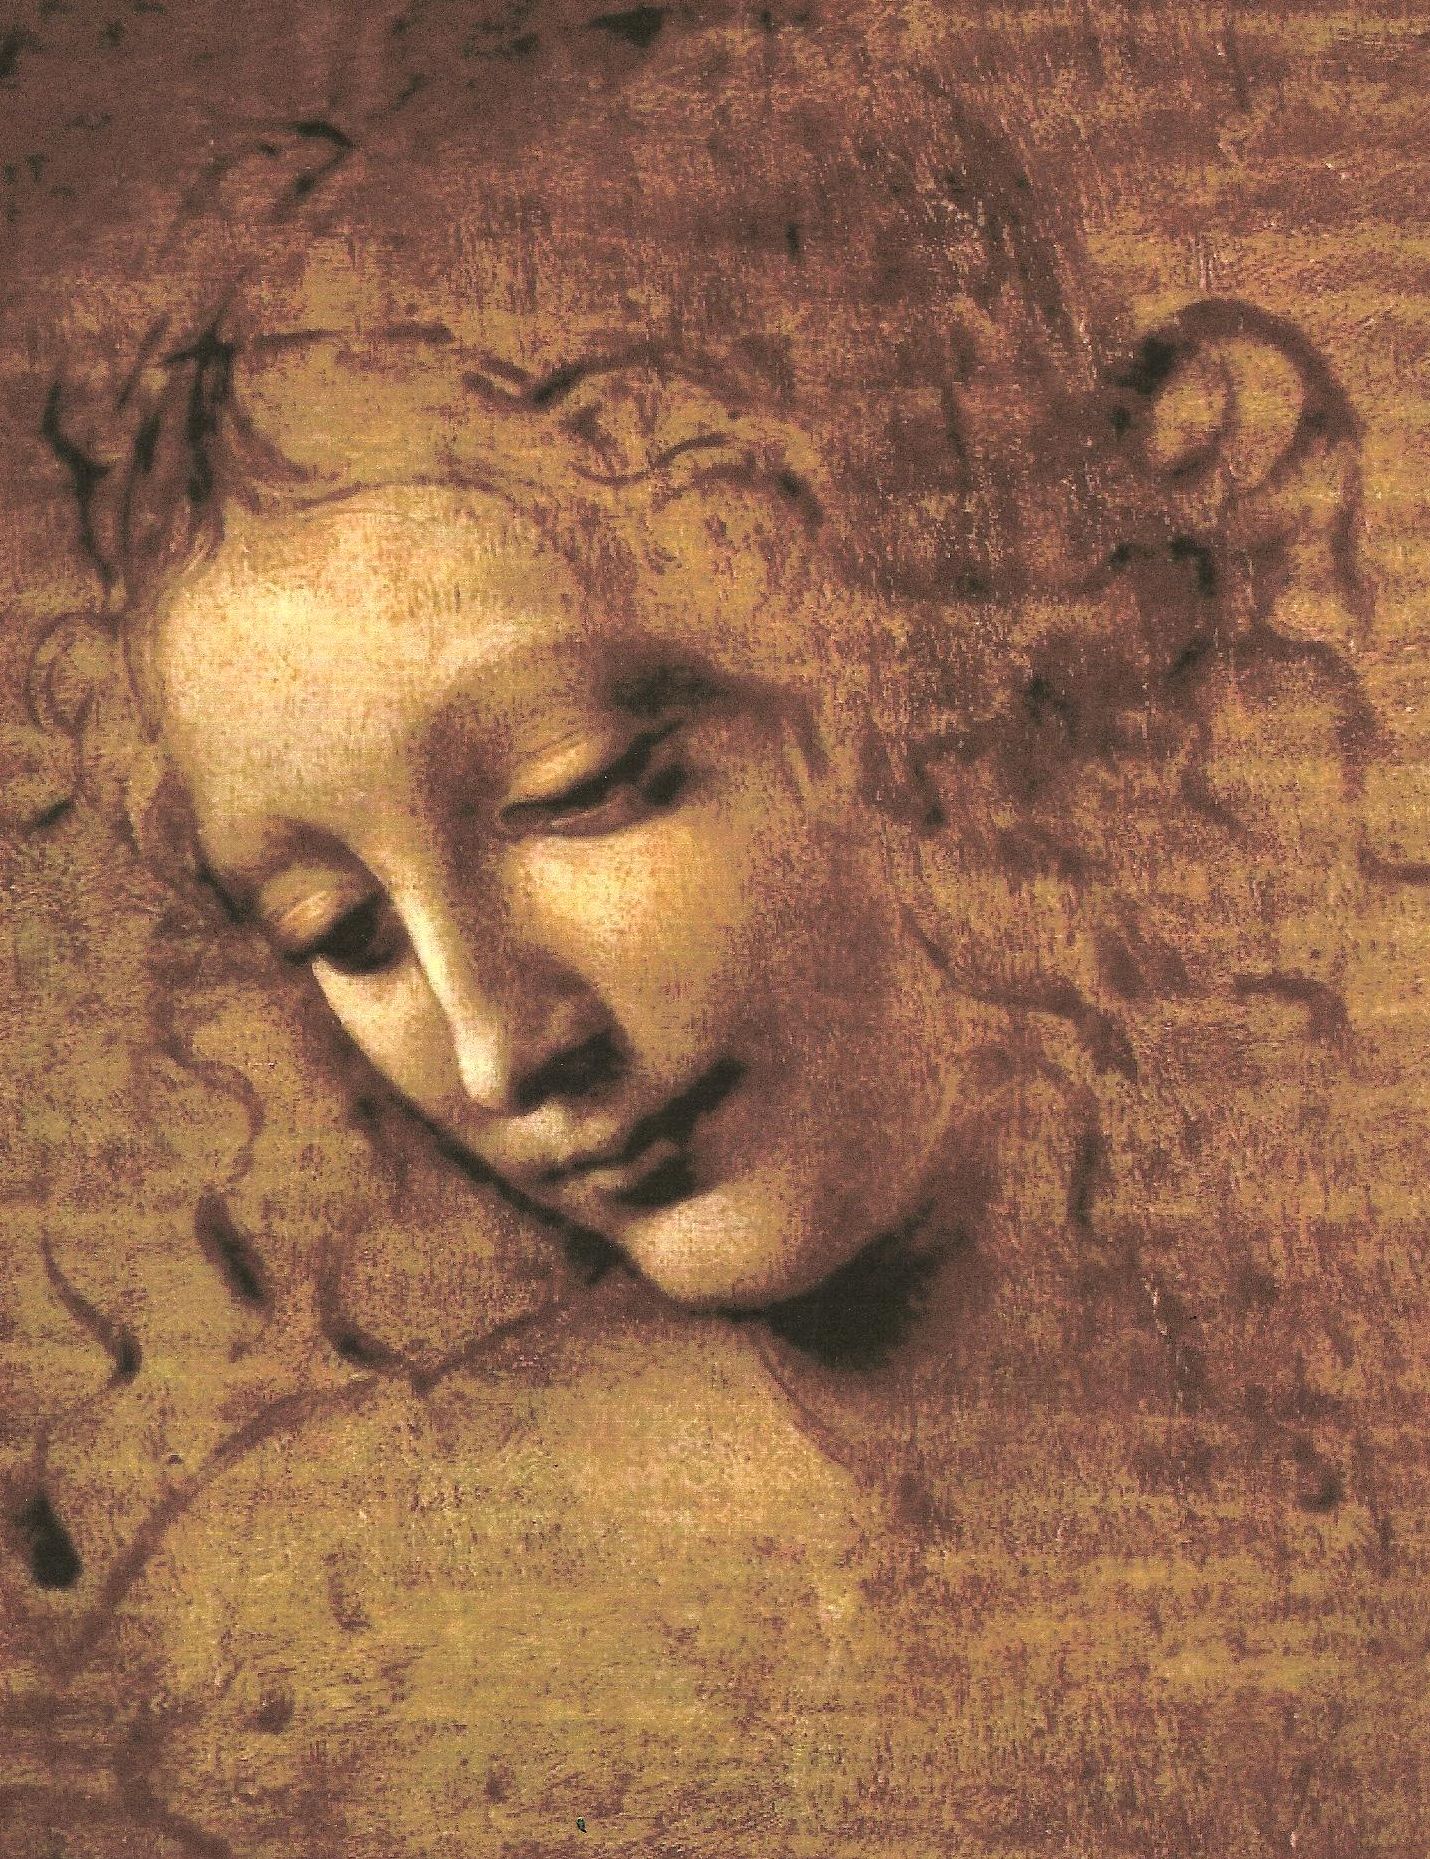 La Scapigliata by Leonardo Da Vinci, 1508